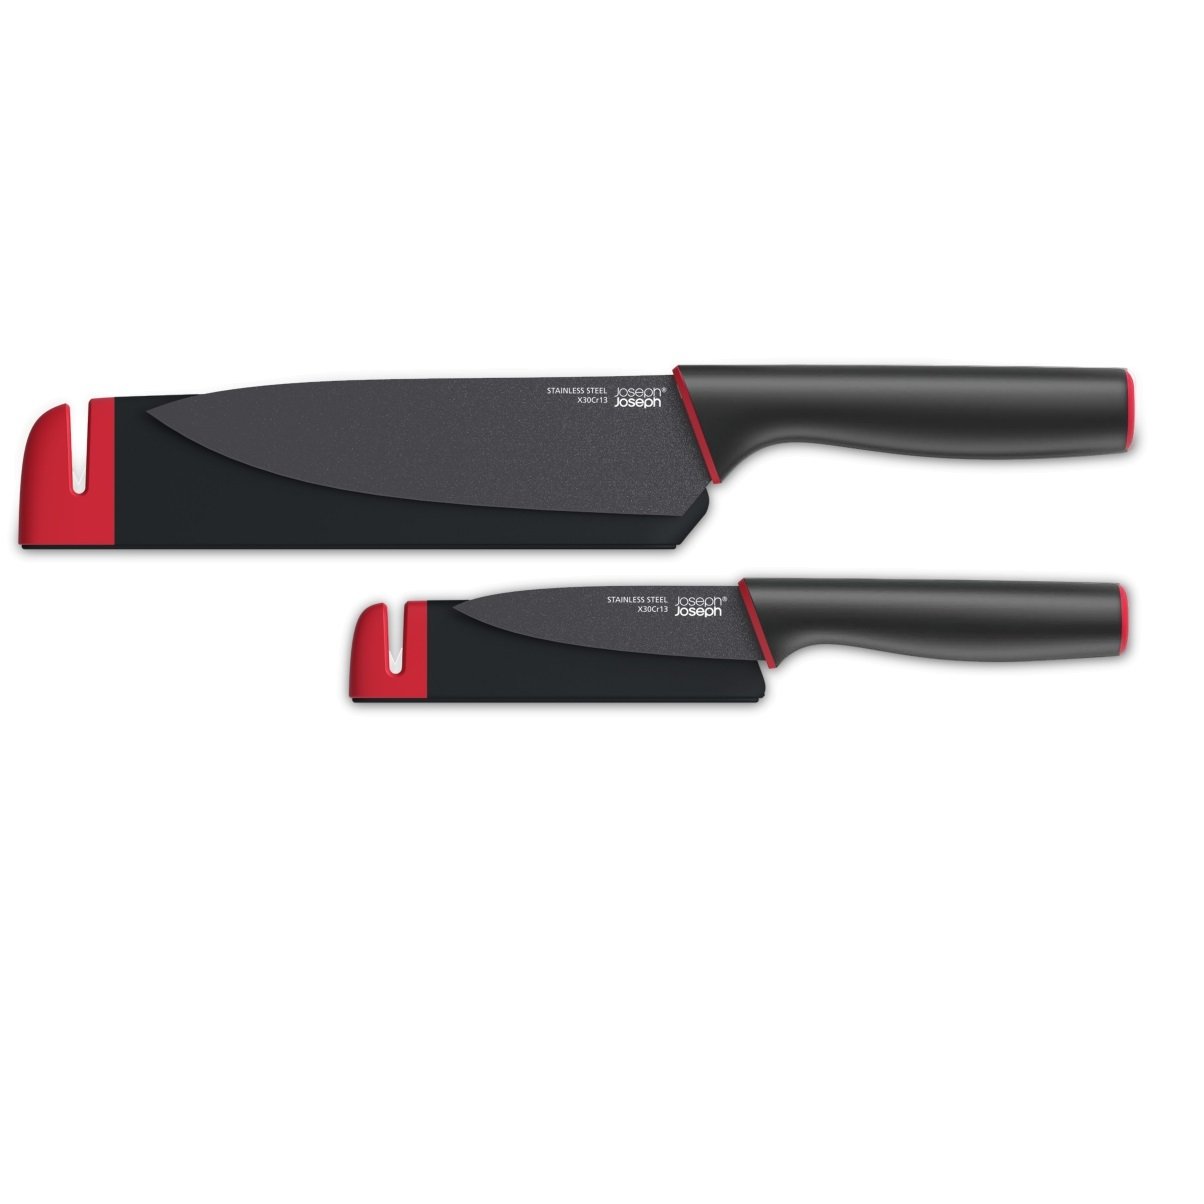 JOSEPH JOSEPH Slice and Sharpen černá 2 ks (10146) - sada kuchyňských nožů z nerezové oceli s brousek